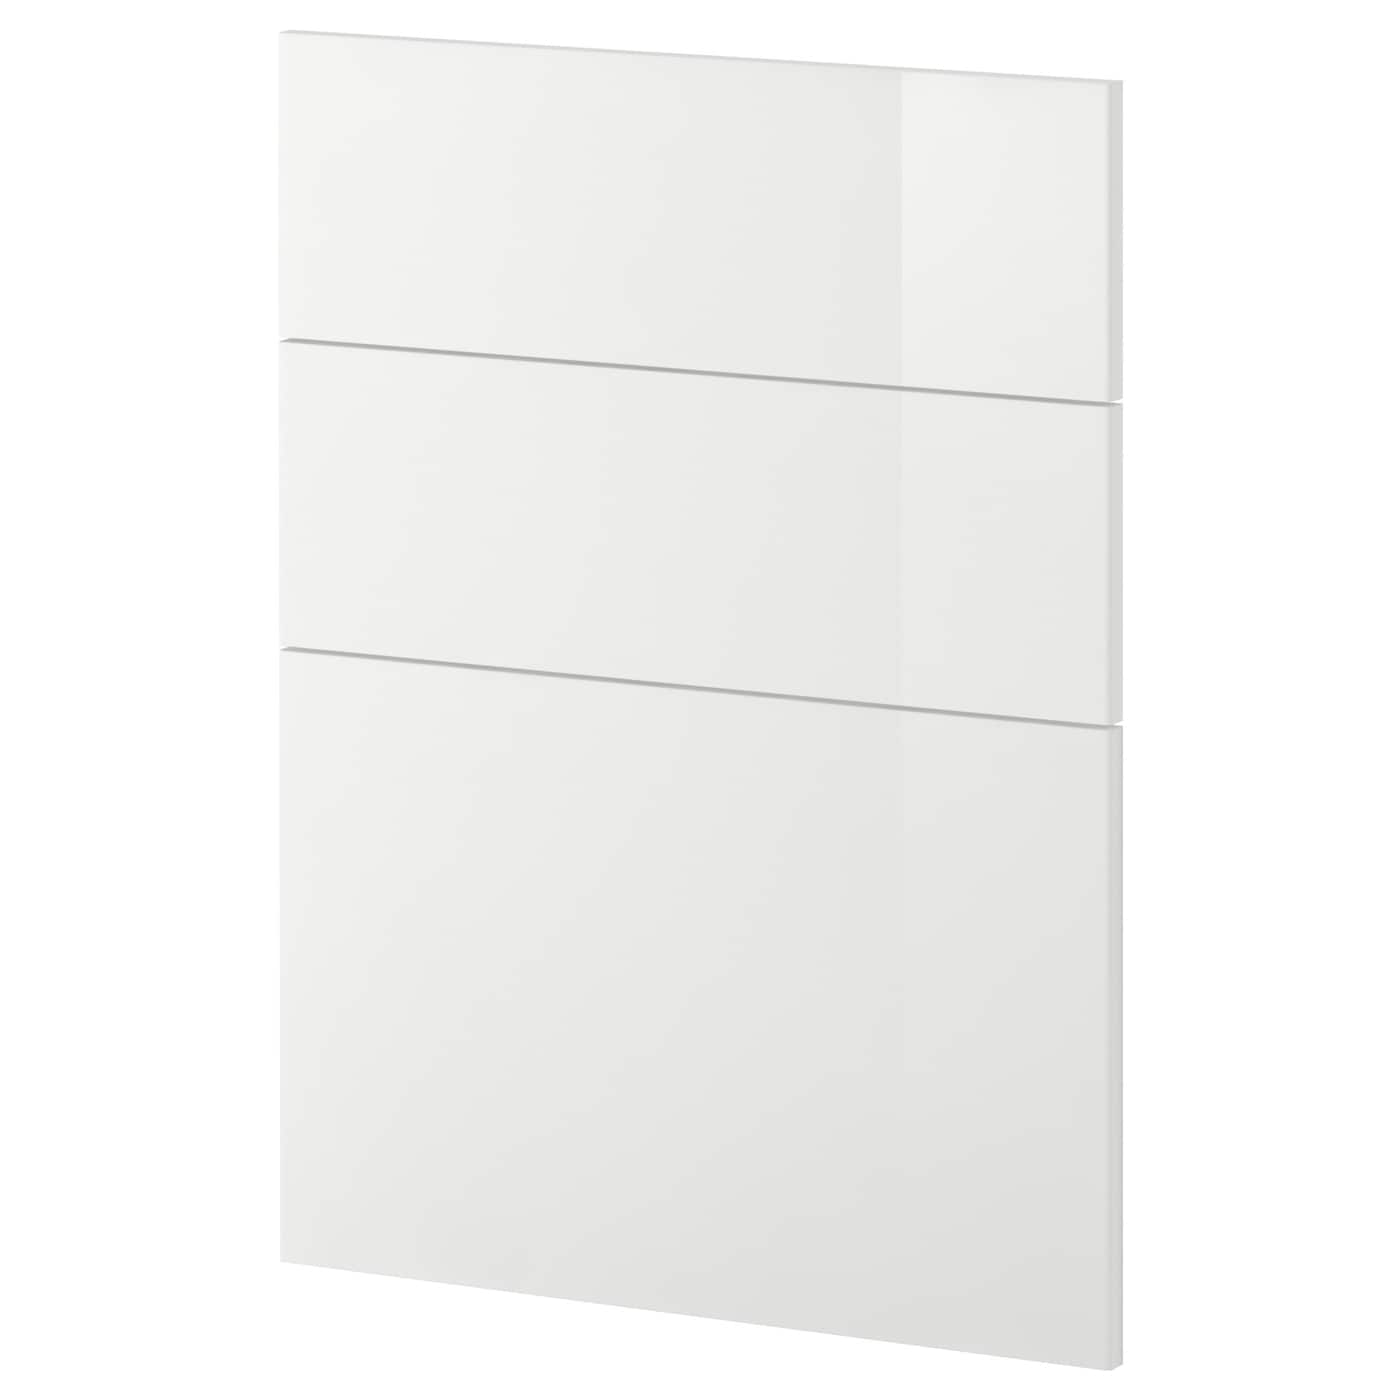 Накладная панель для посудомоечной машины - IKEA METOD, 80х60 см, белый, МЕТОД ИКЕА